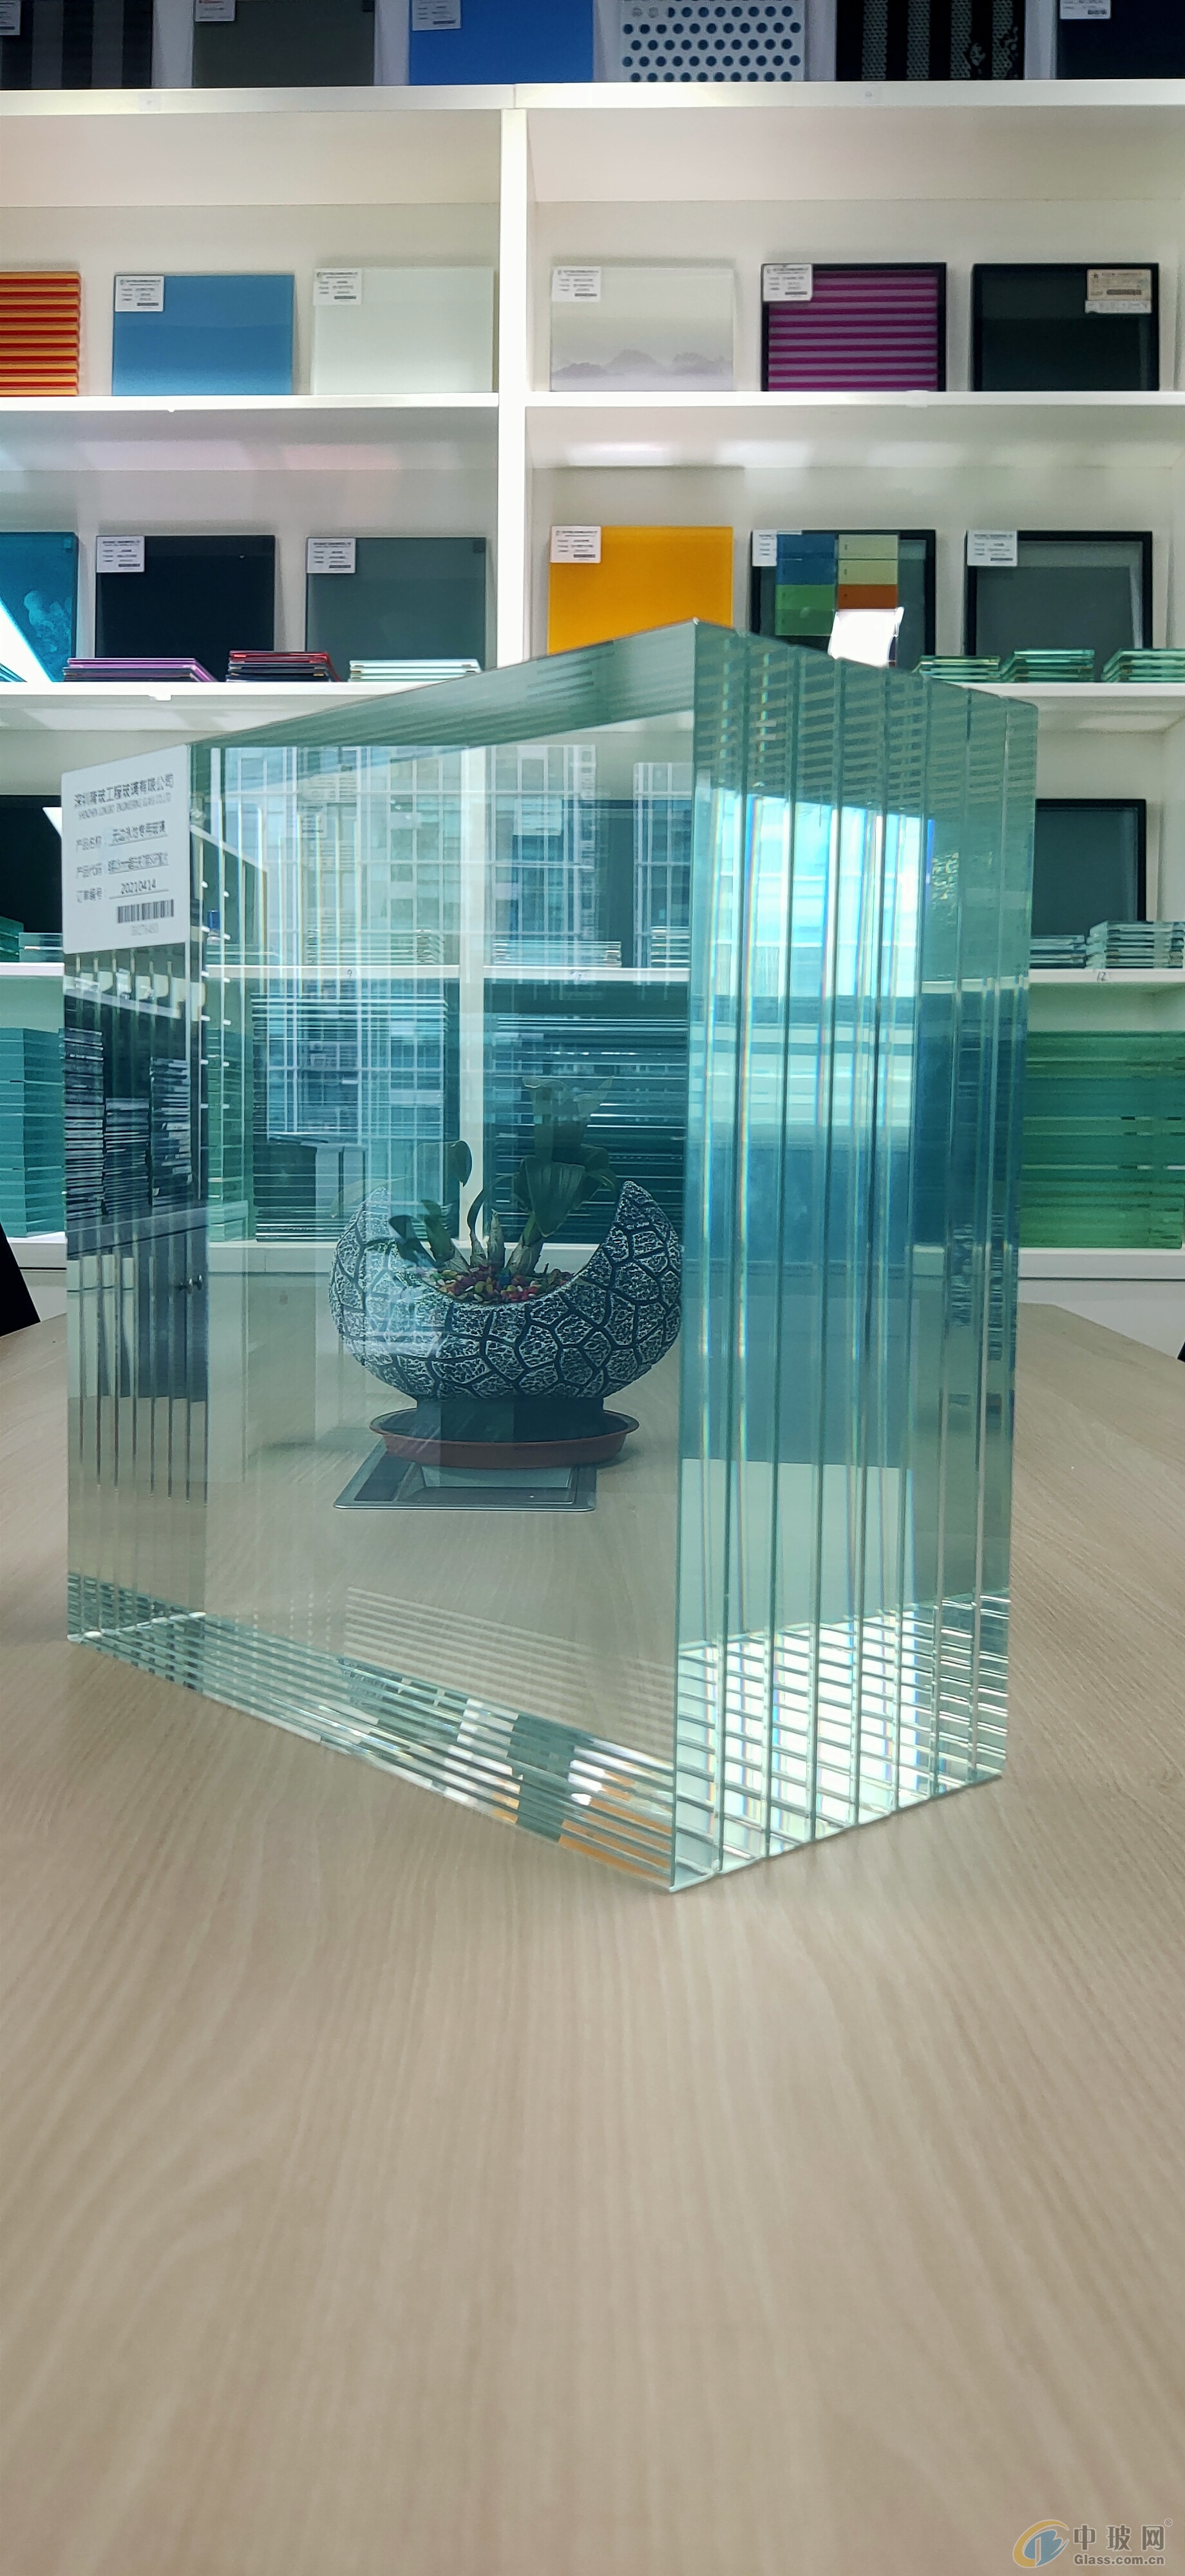 特种玻璃、超厚玻璃、超大玻璃、SGP玻璃、夹层玻璃、夹胶玻璃厂